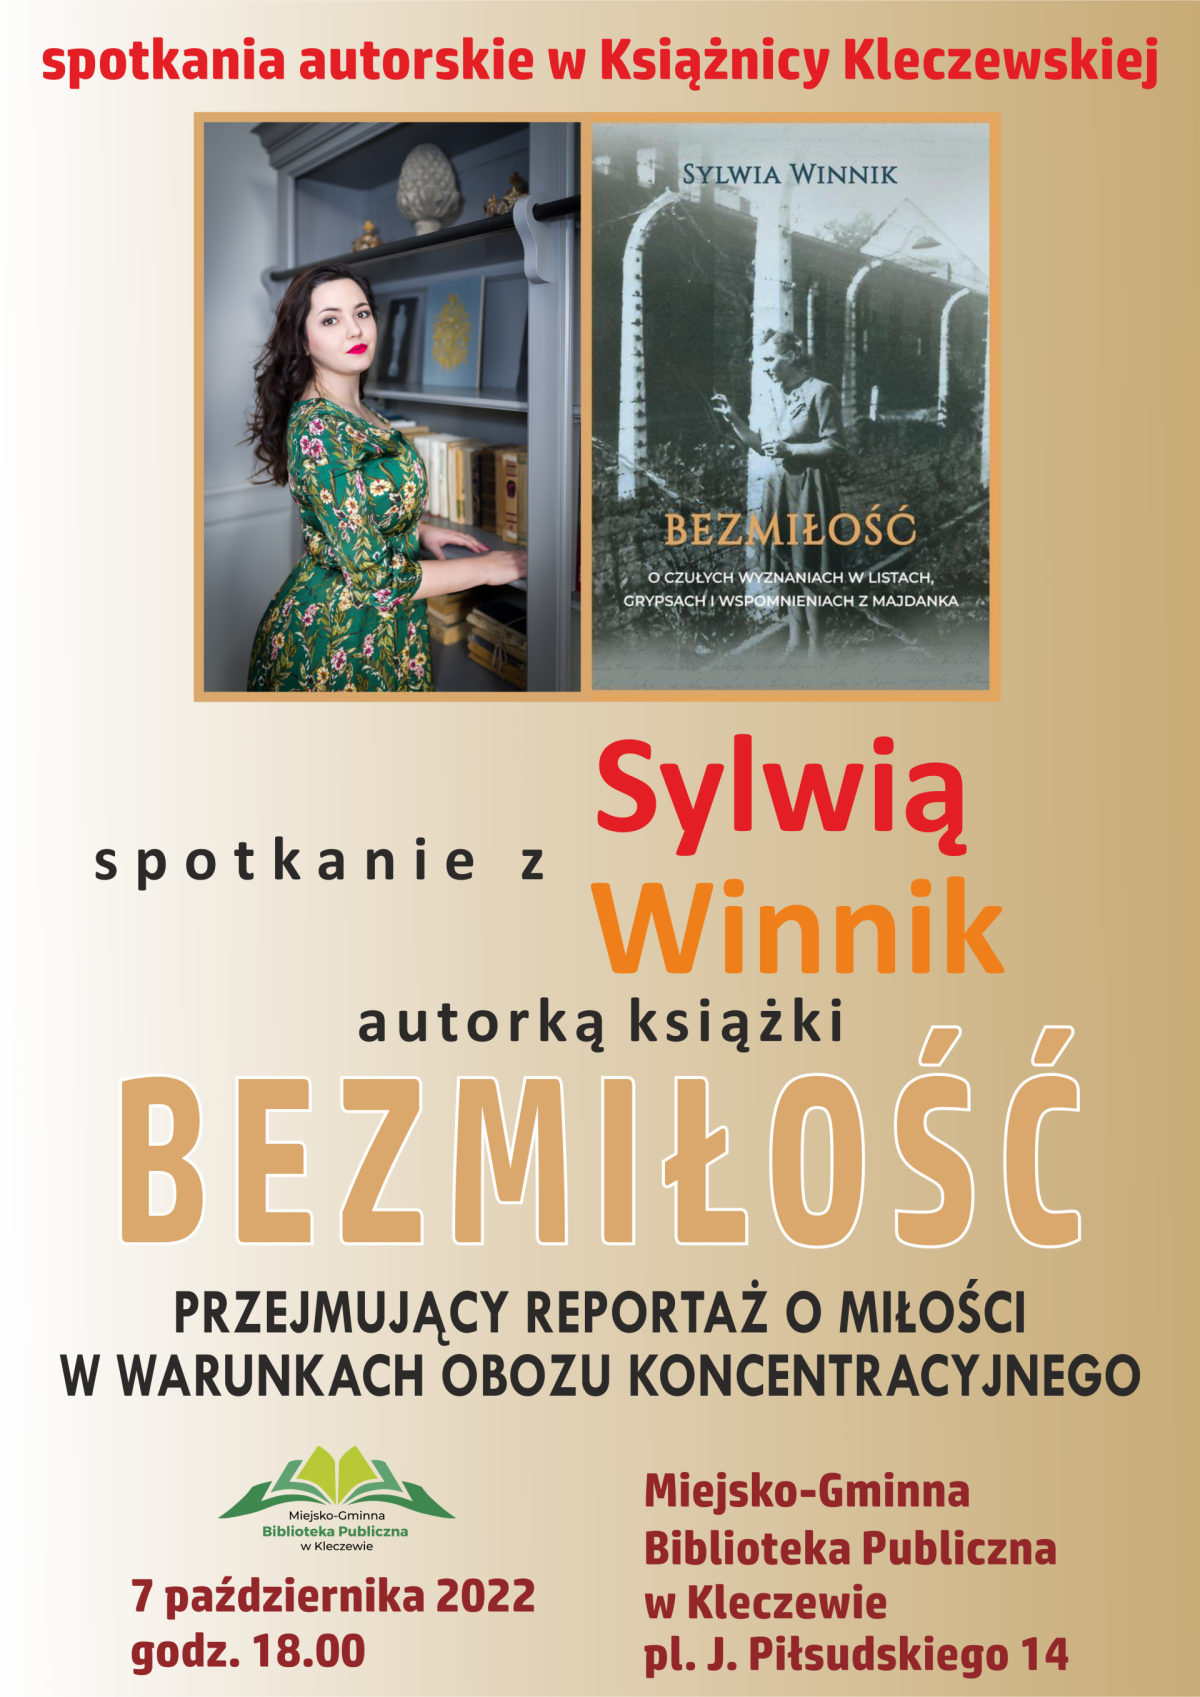 Spotkanie autorskie z pisarką Sylwią Winnik